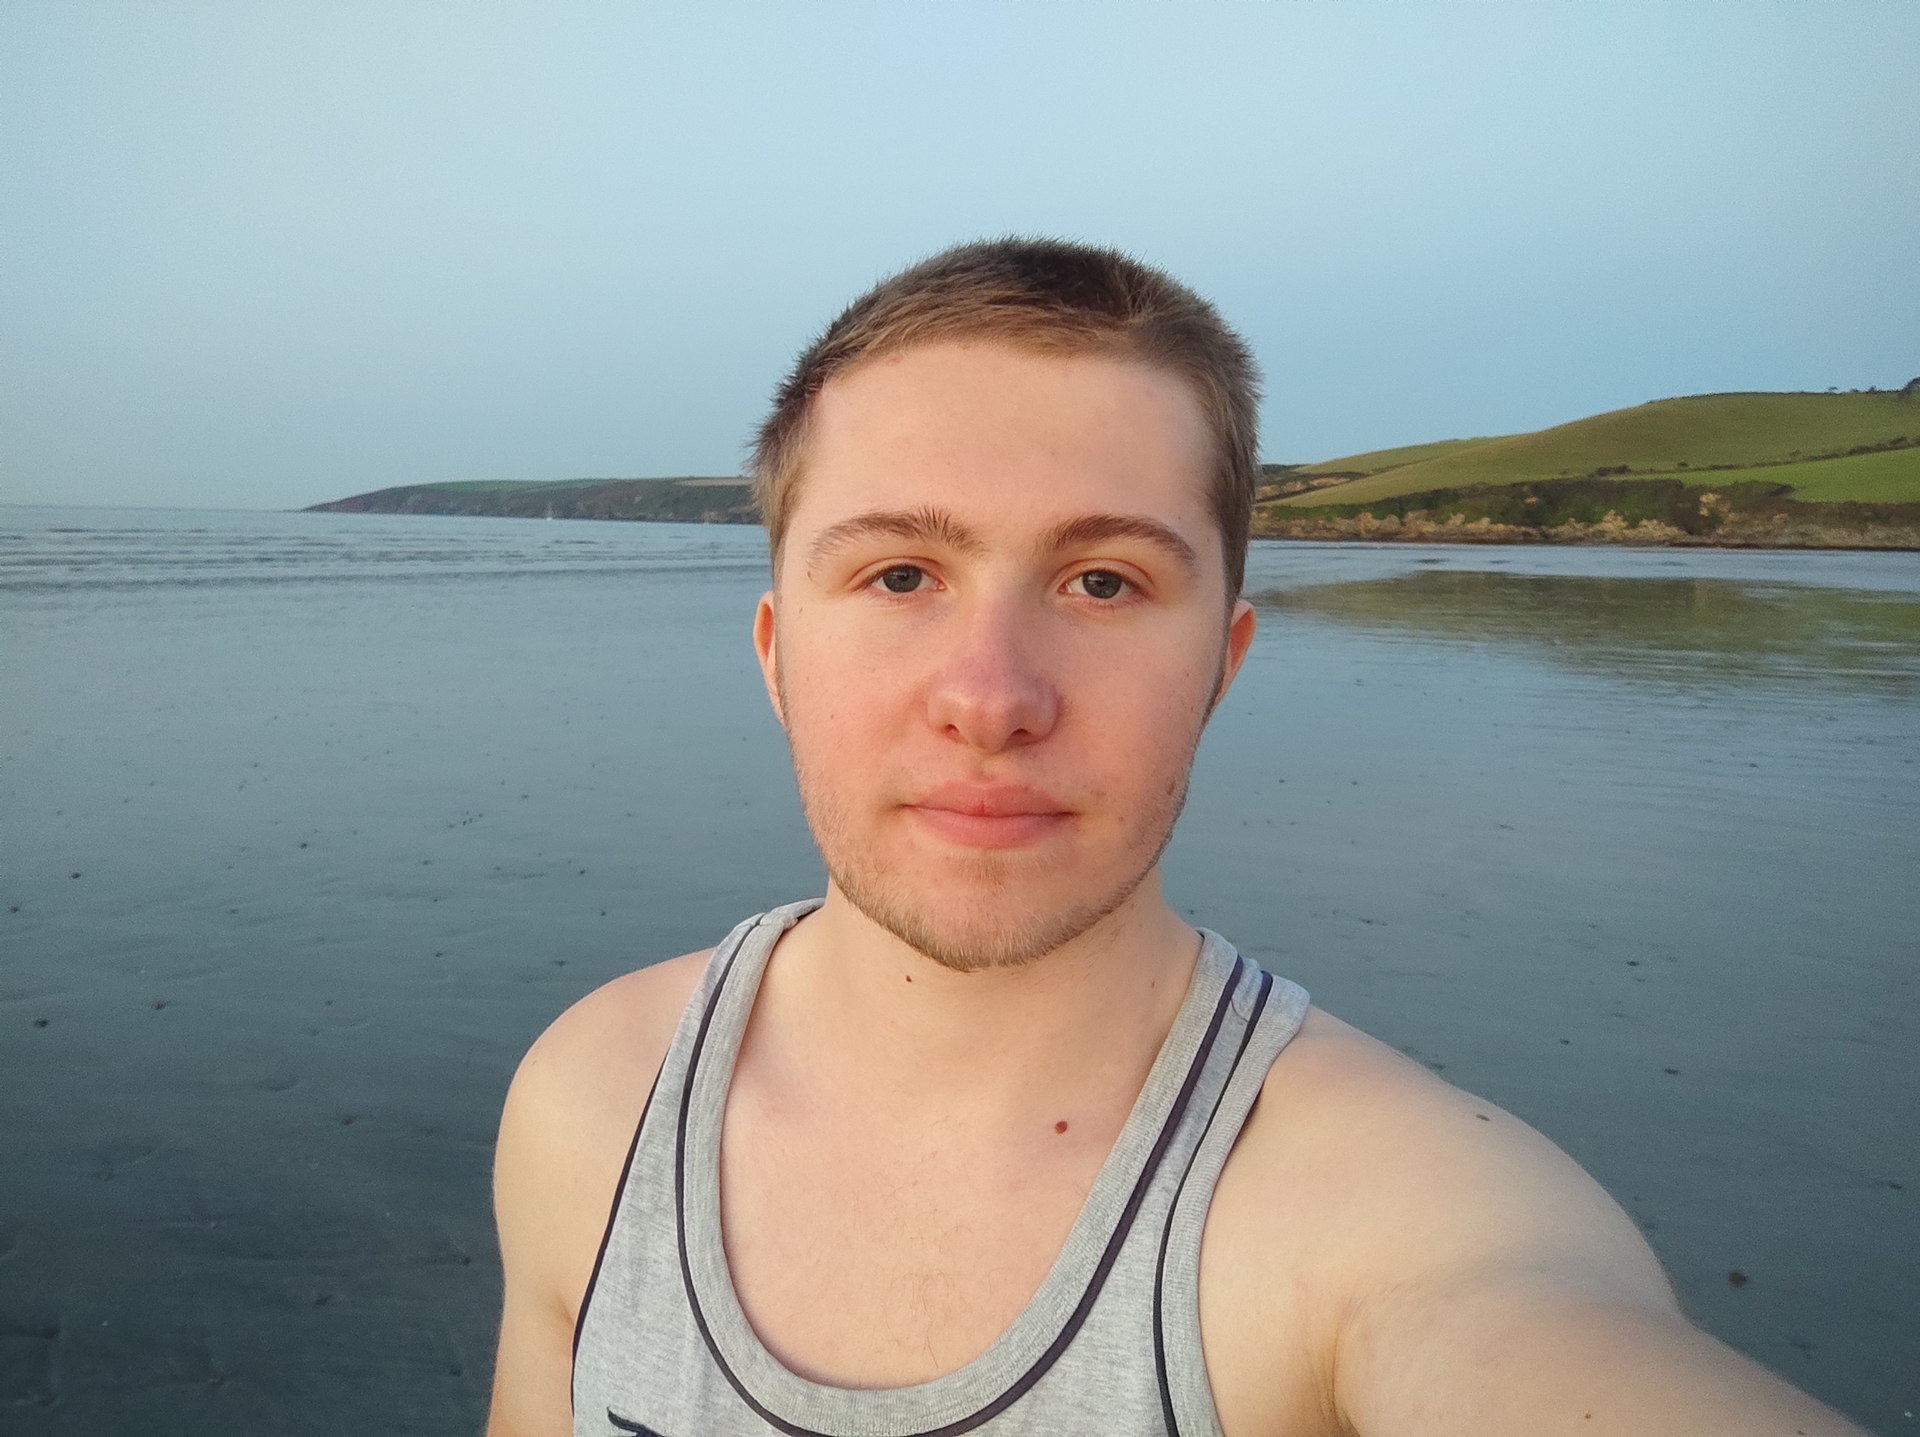 Xiaomi Poco X3 NFC selfie photo sample at the beach